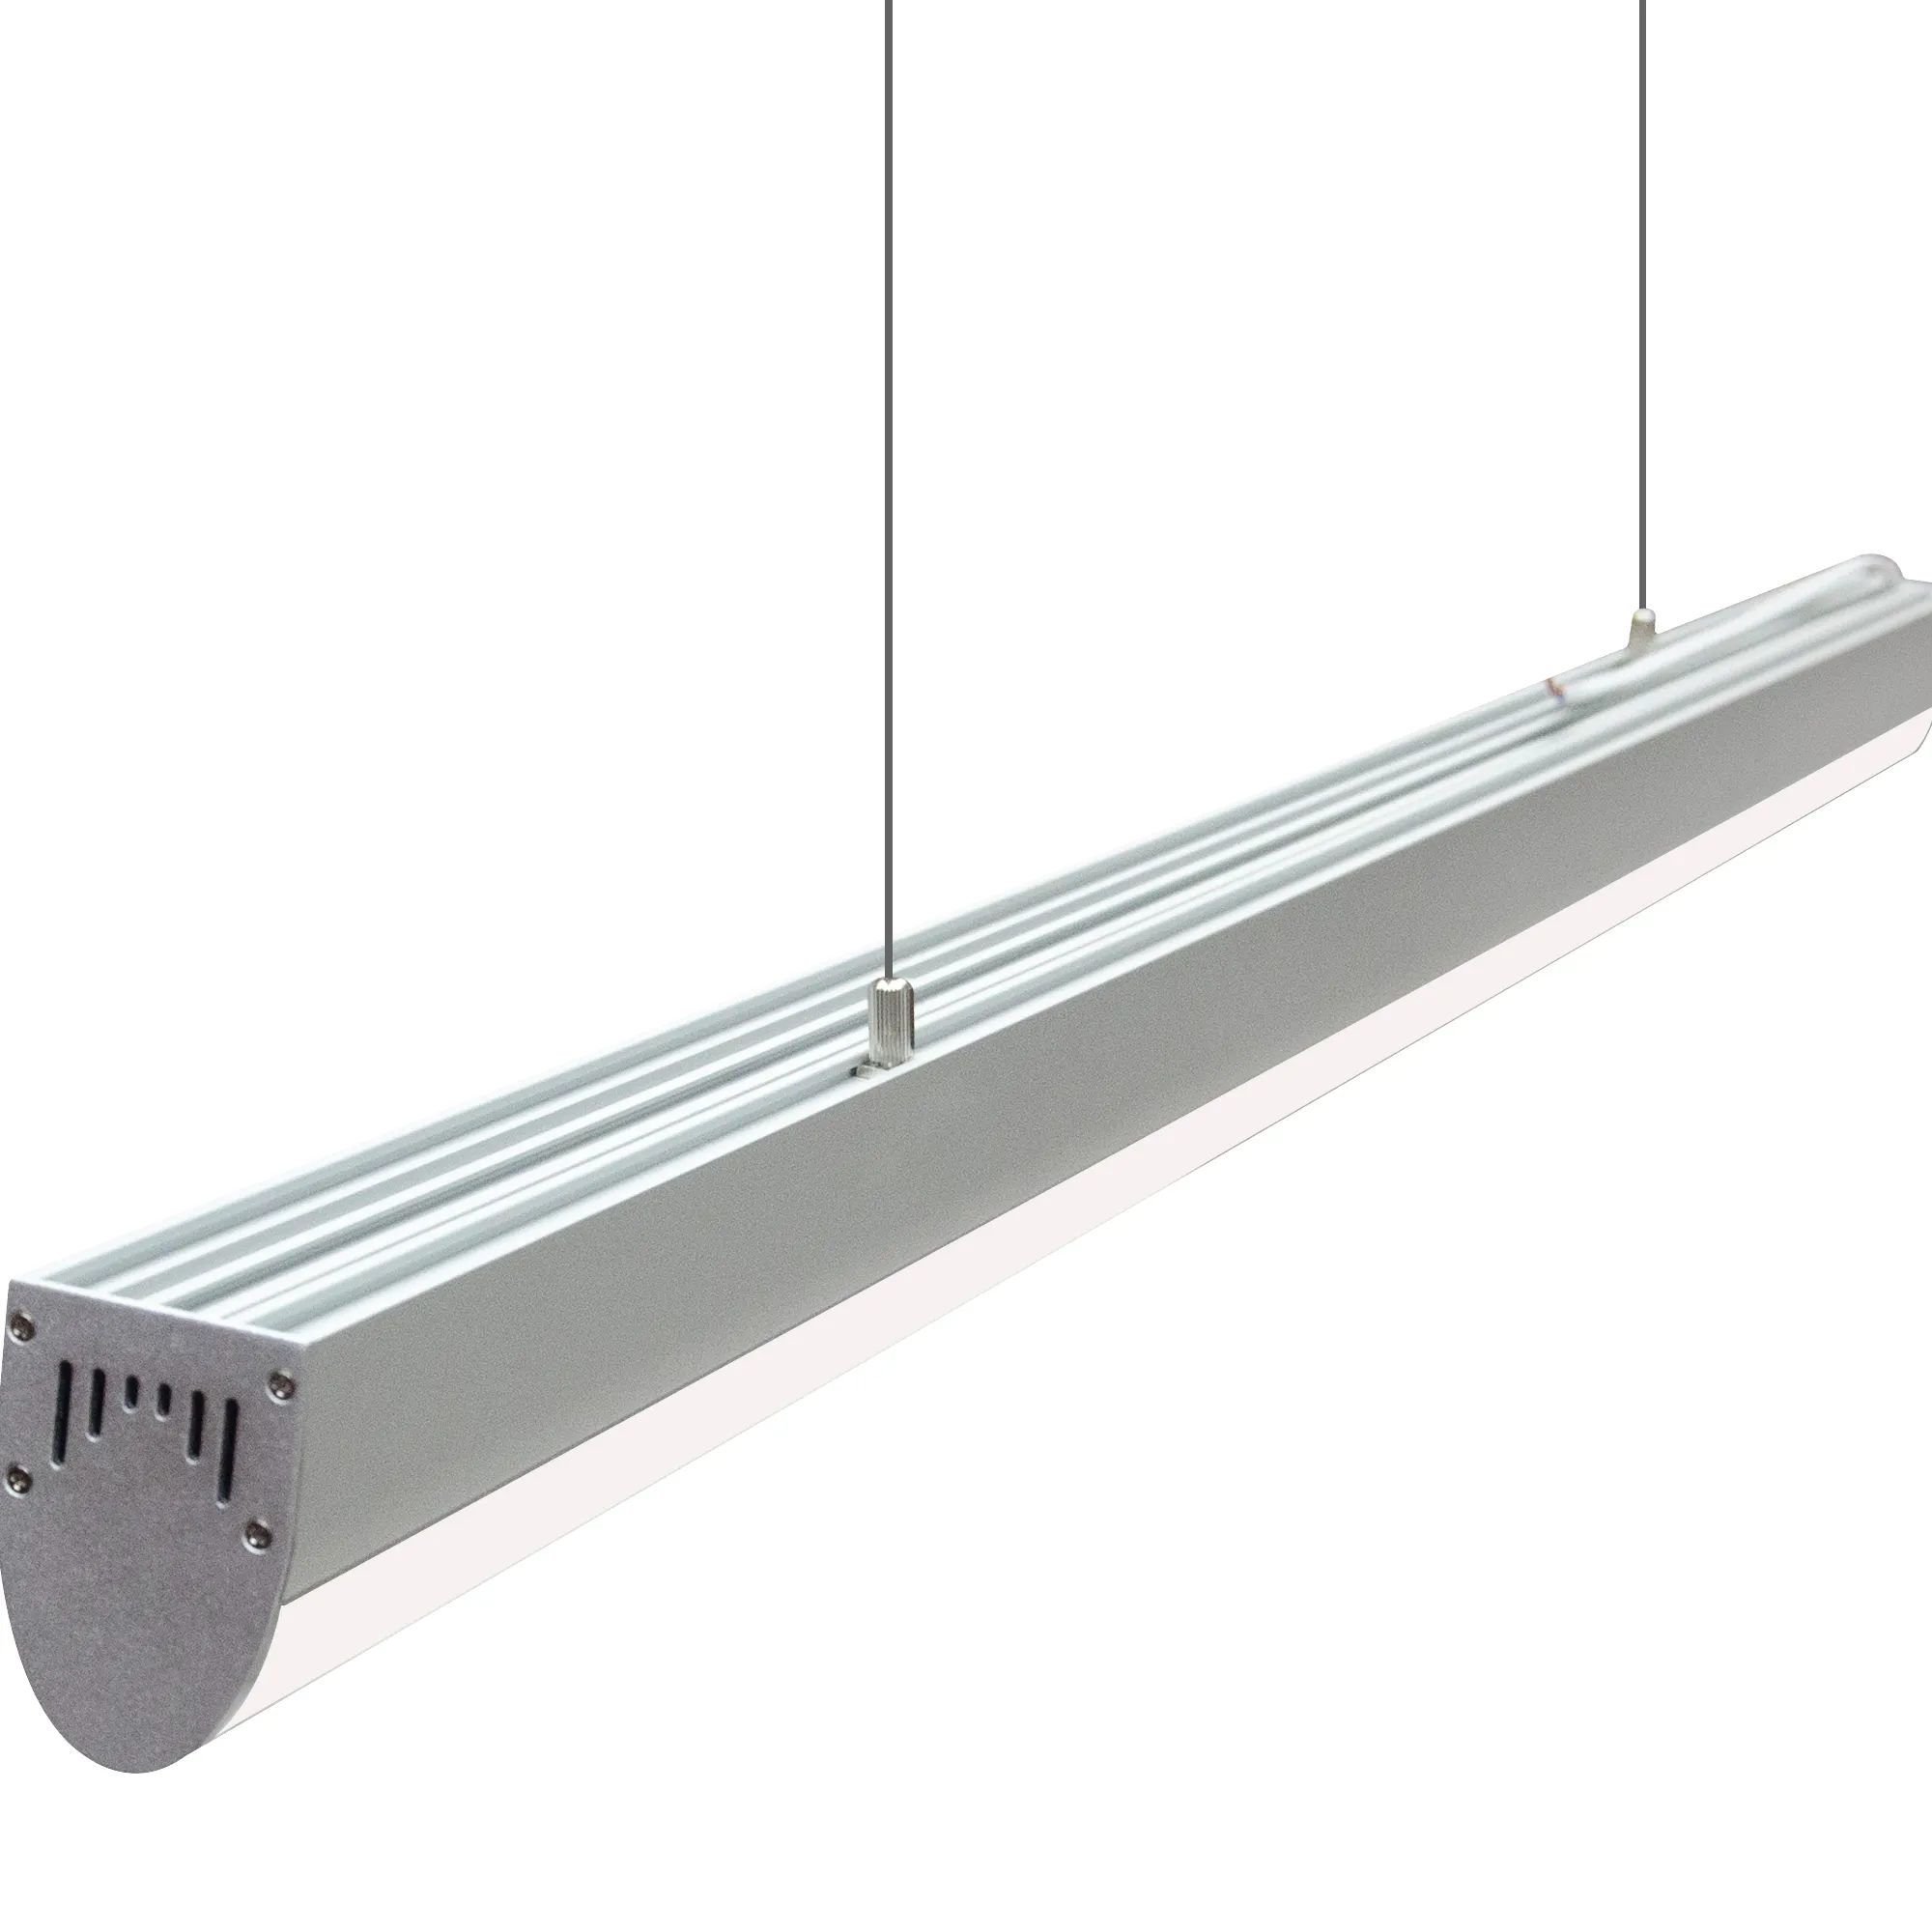 High quality aluminum 22W super bright linear light for office/supermarket led linear pendant light tube light